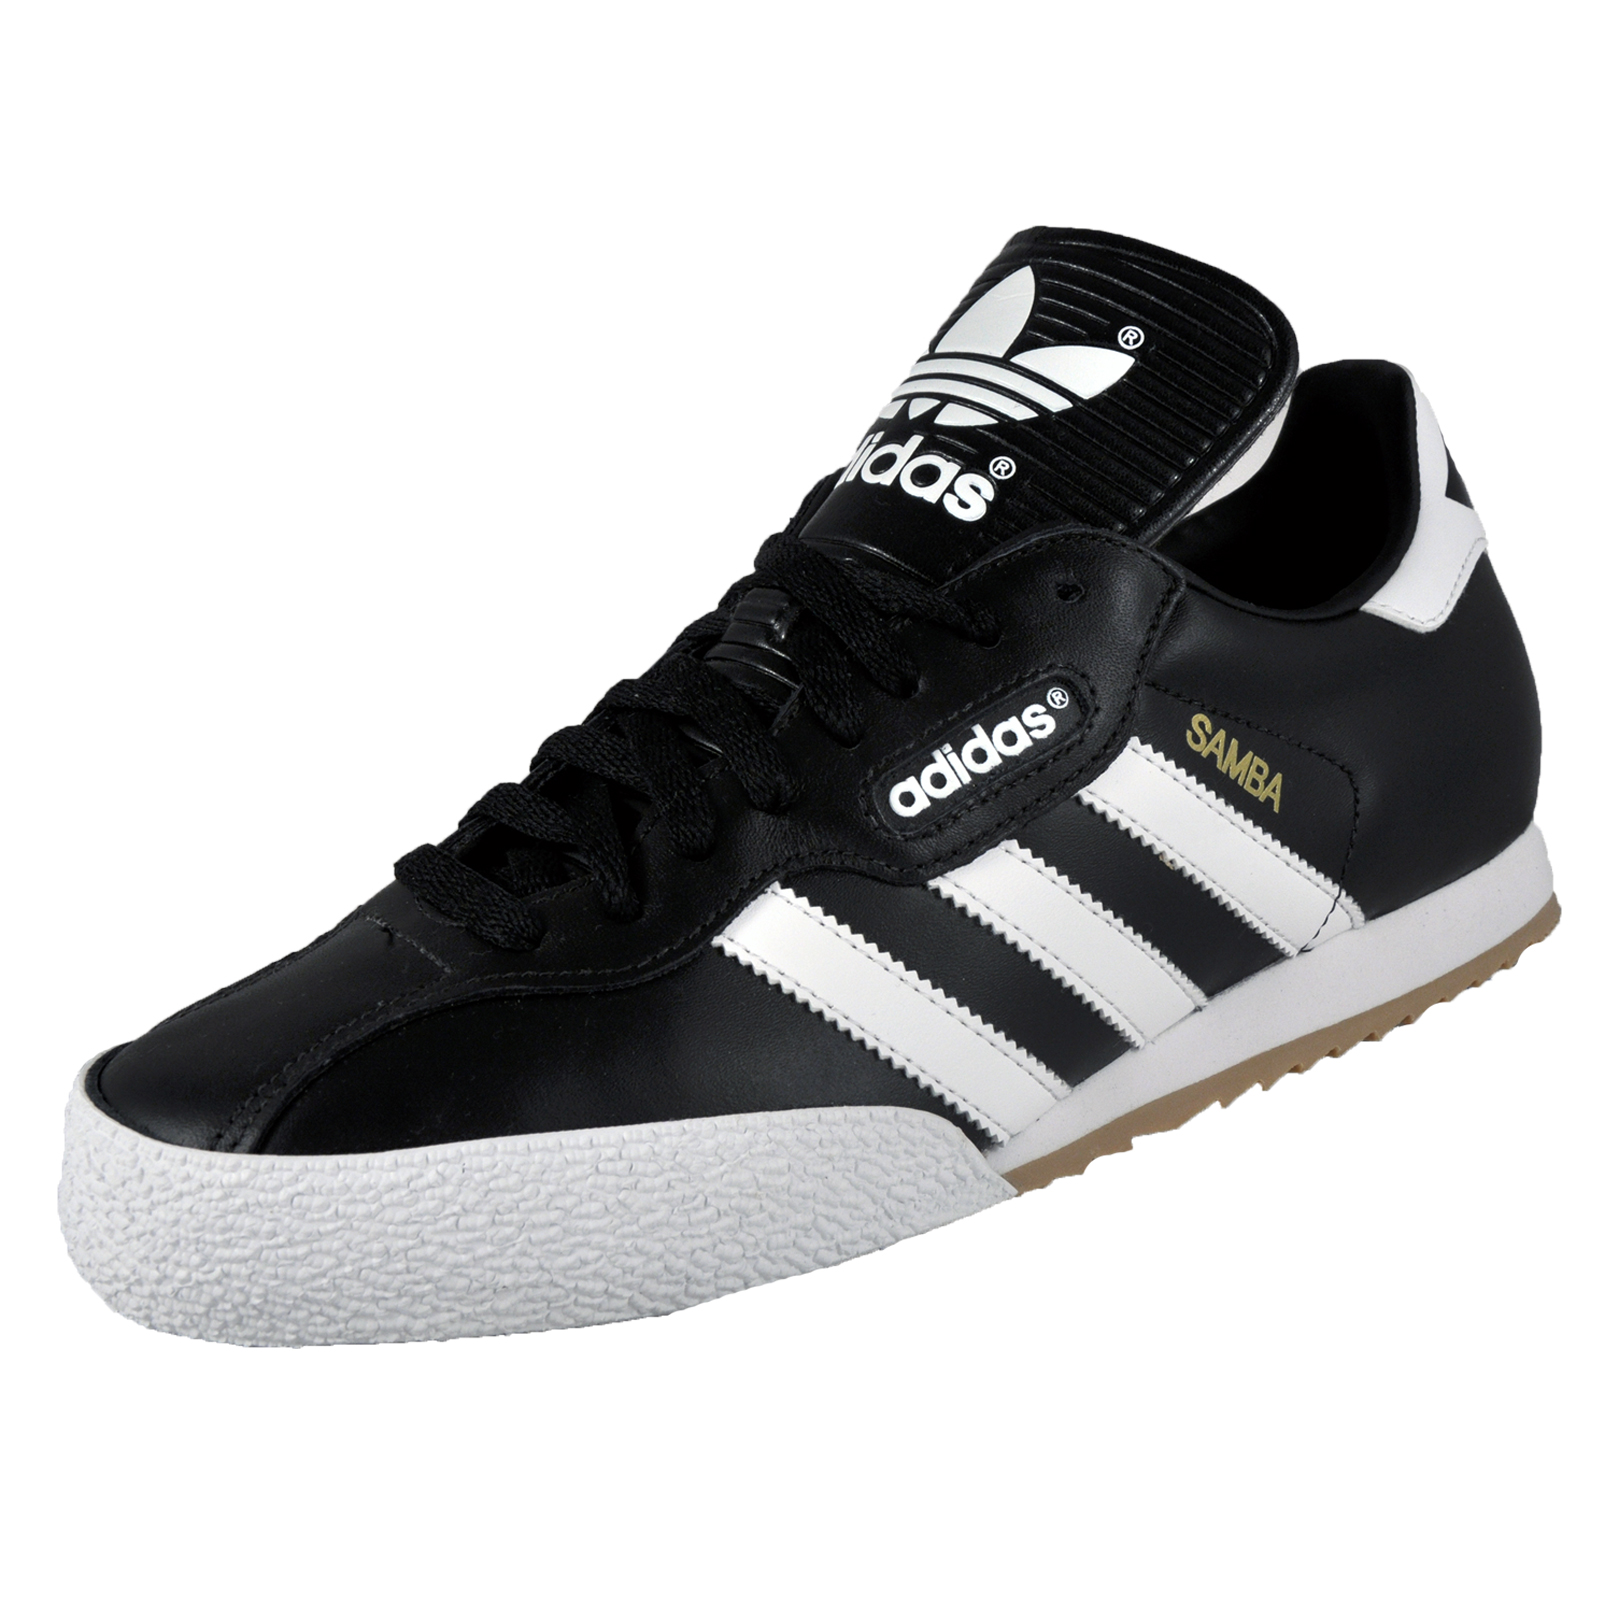 Adidas Originals Mens Samba Super Leather Trainers * AUTHENTIC * | eBay